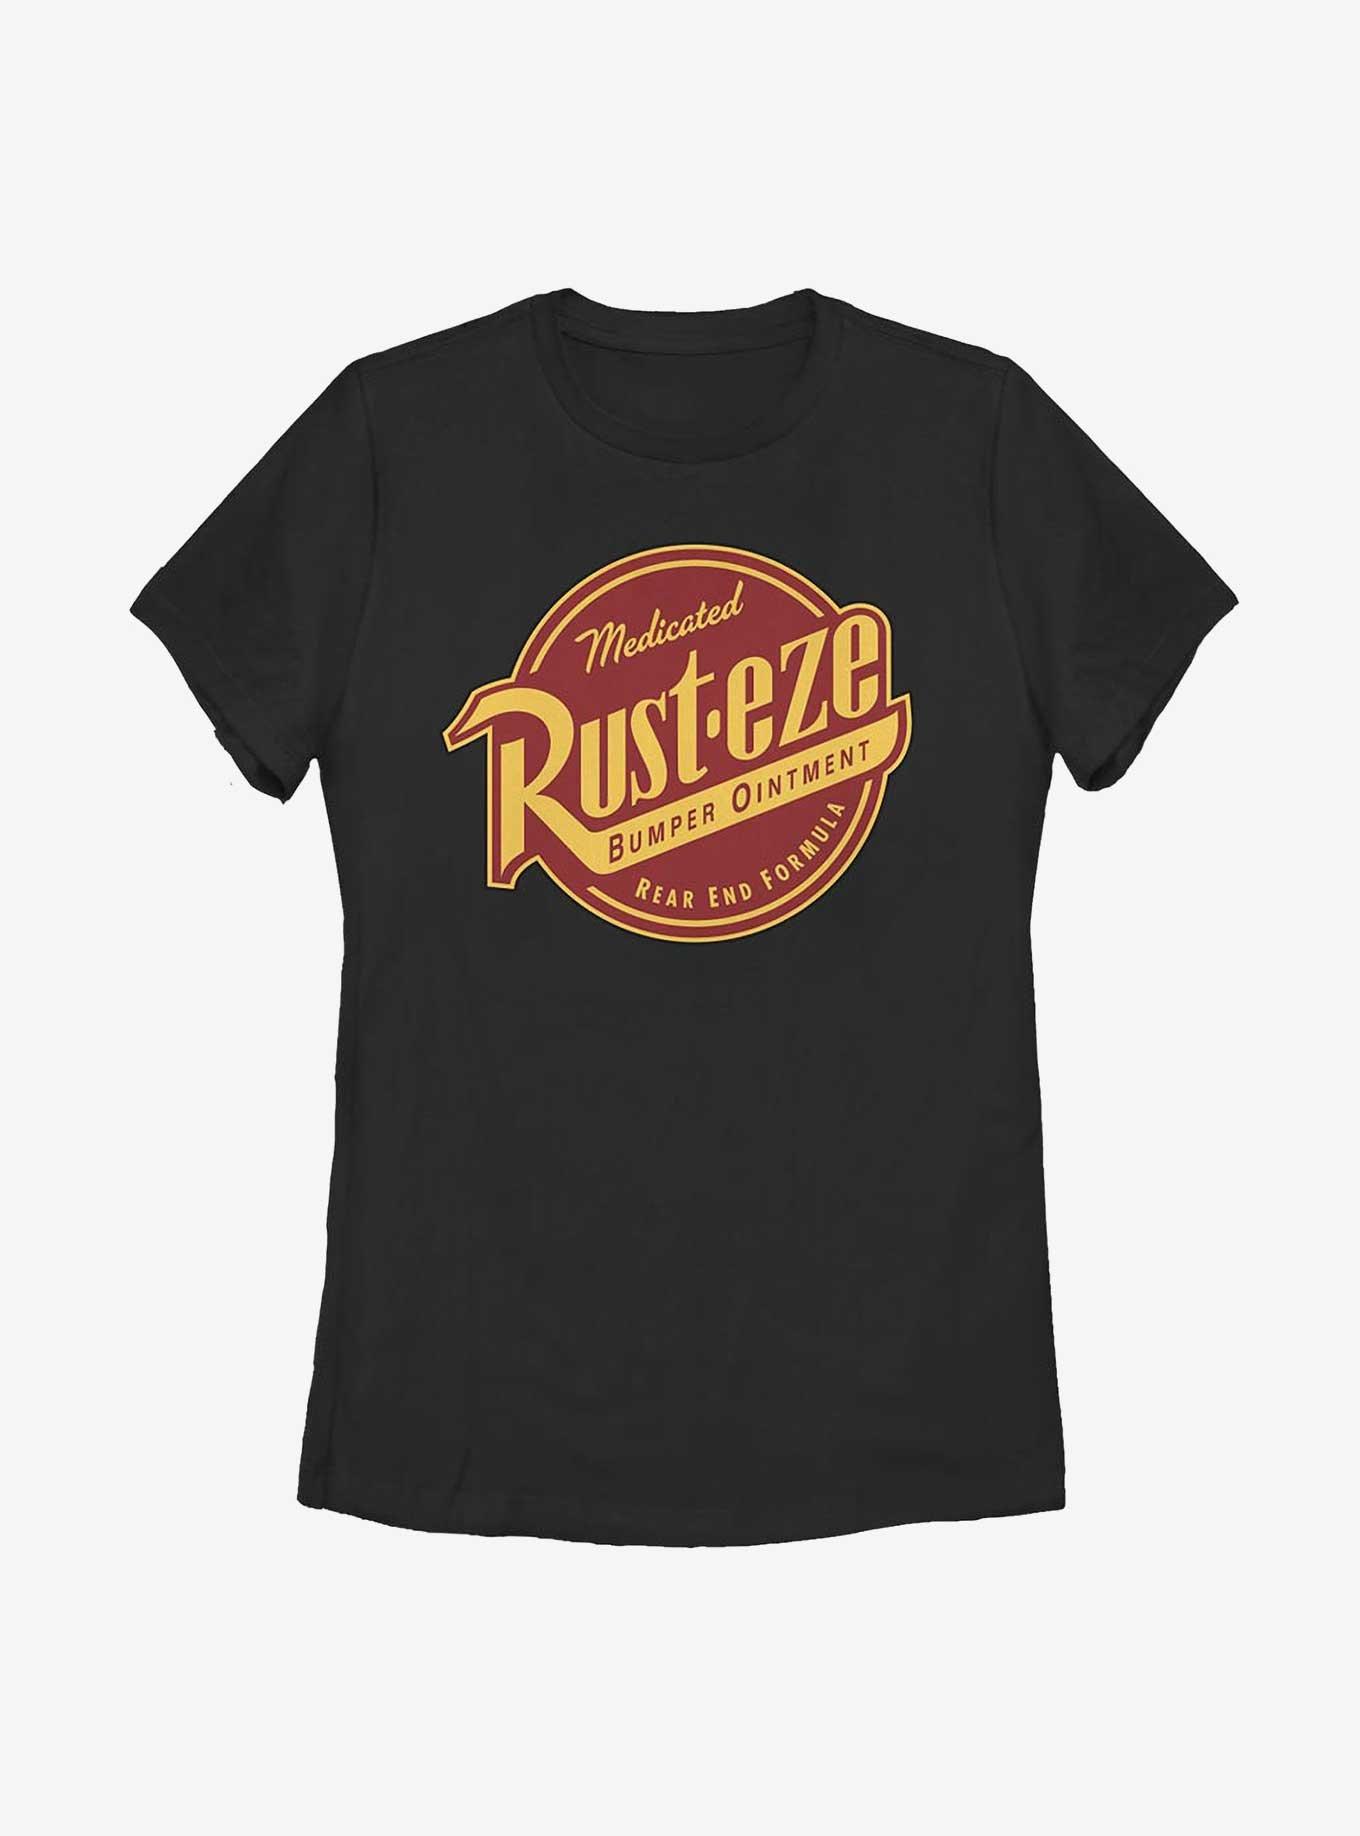 Disney Pixar Cars Rust-eze Label Womens T-Shirt, BLACK, hi-res